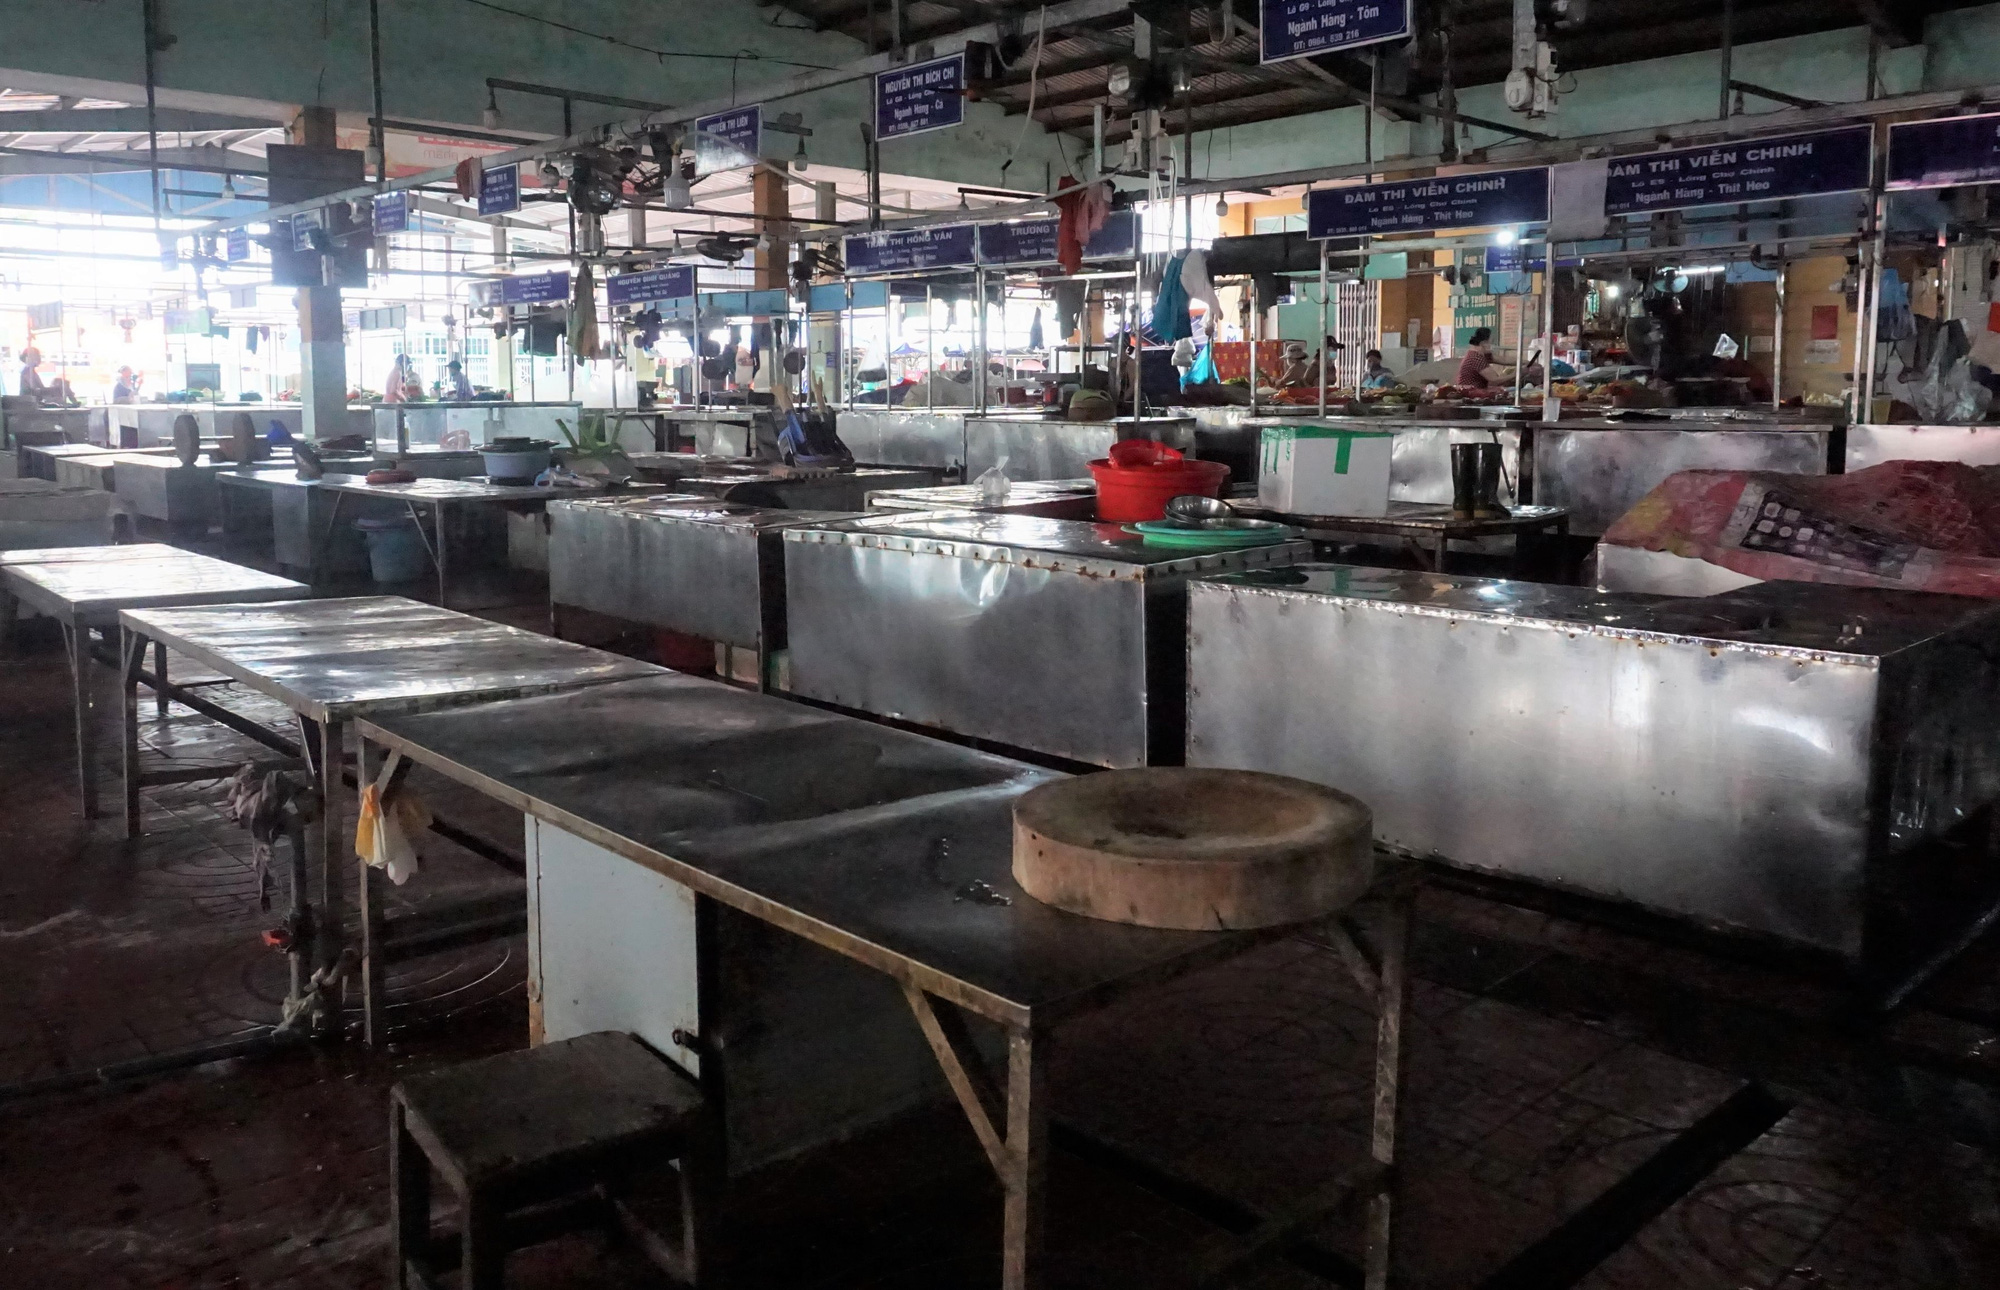 Giá thực phẩm ở Đà Nẵng tăng cao, Ban quản lý chợ xử lý tiểu thương phá giá niêm yết - Ảnh 6.